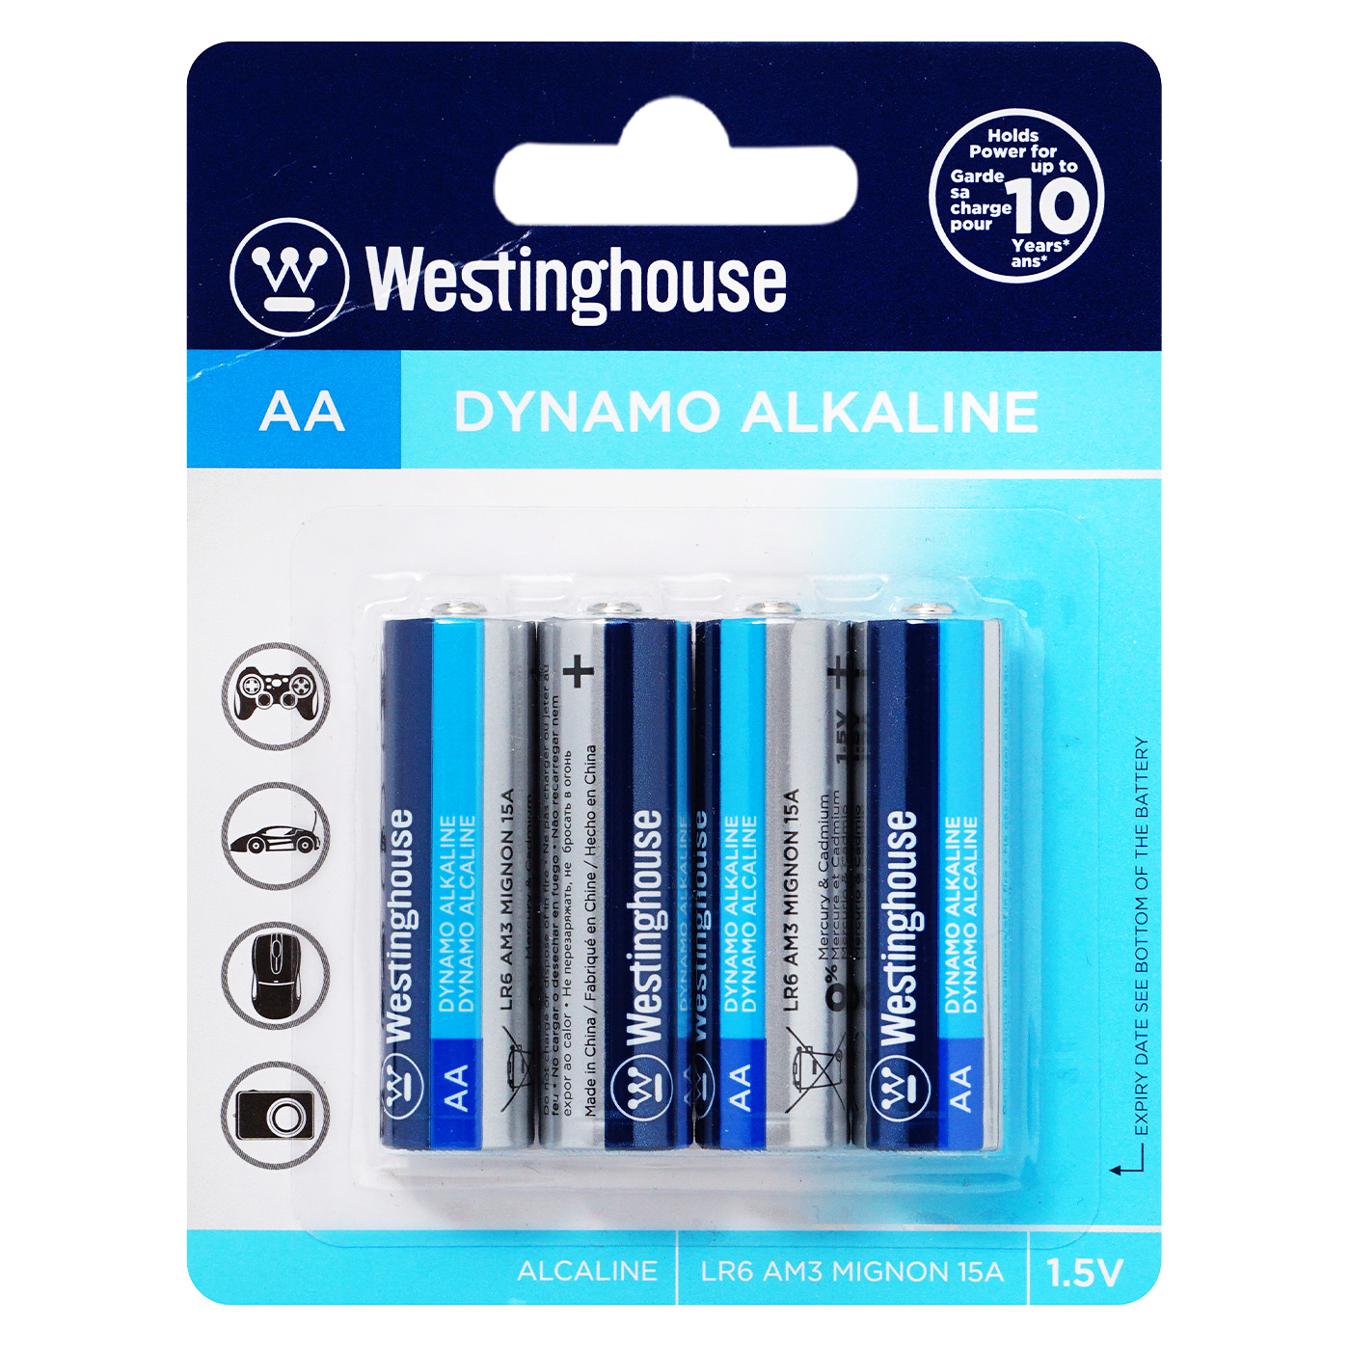 Battery Westinghouse Alkaline Dynamo AA 4 pcs